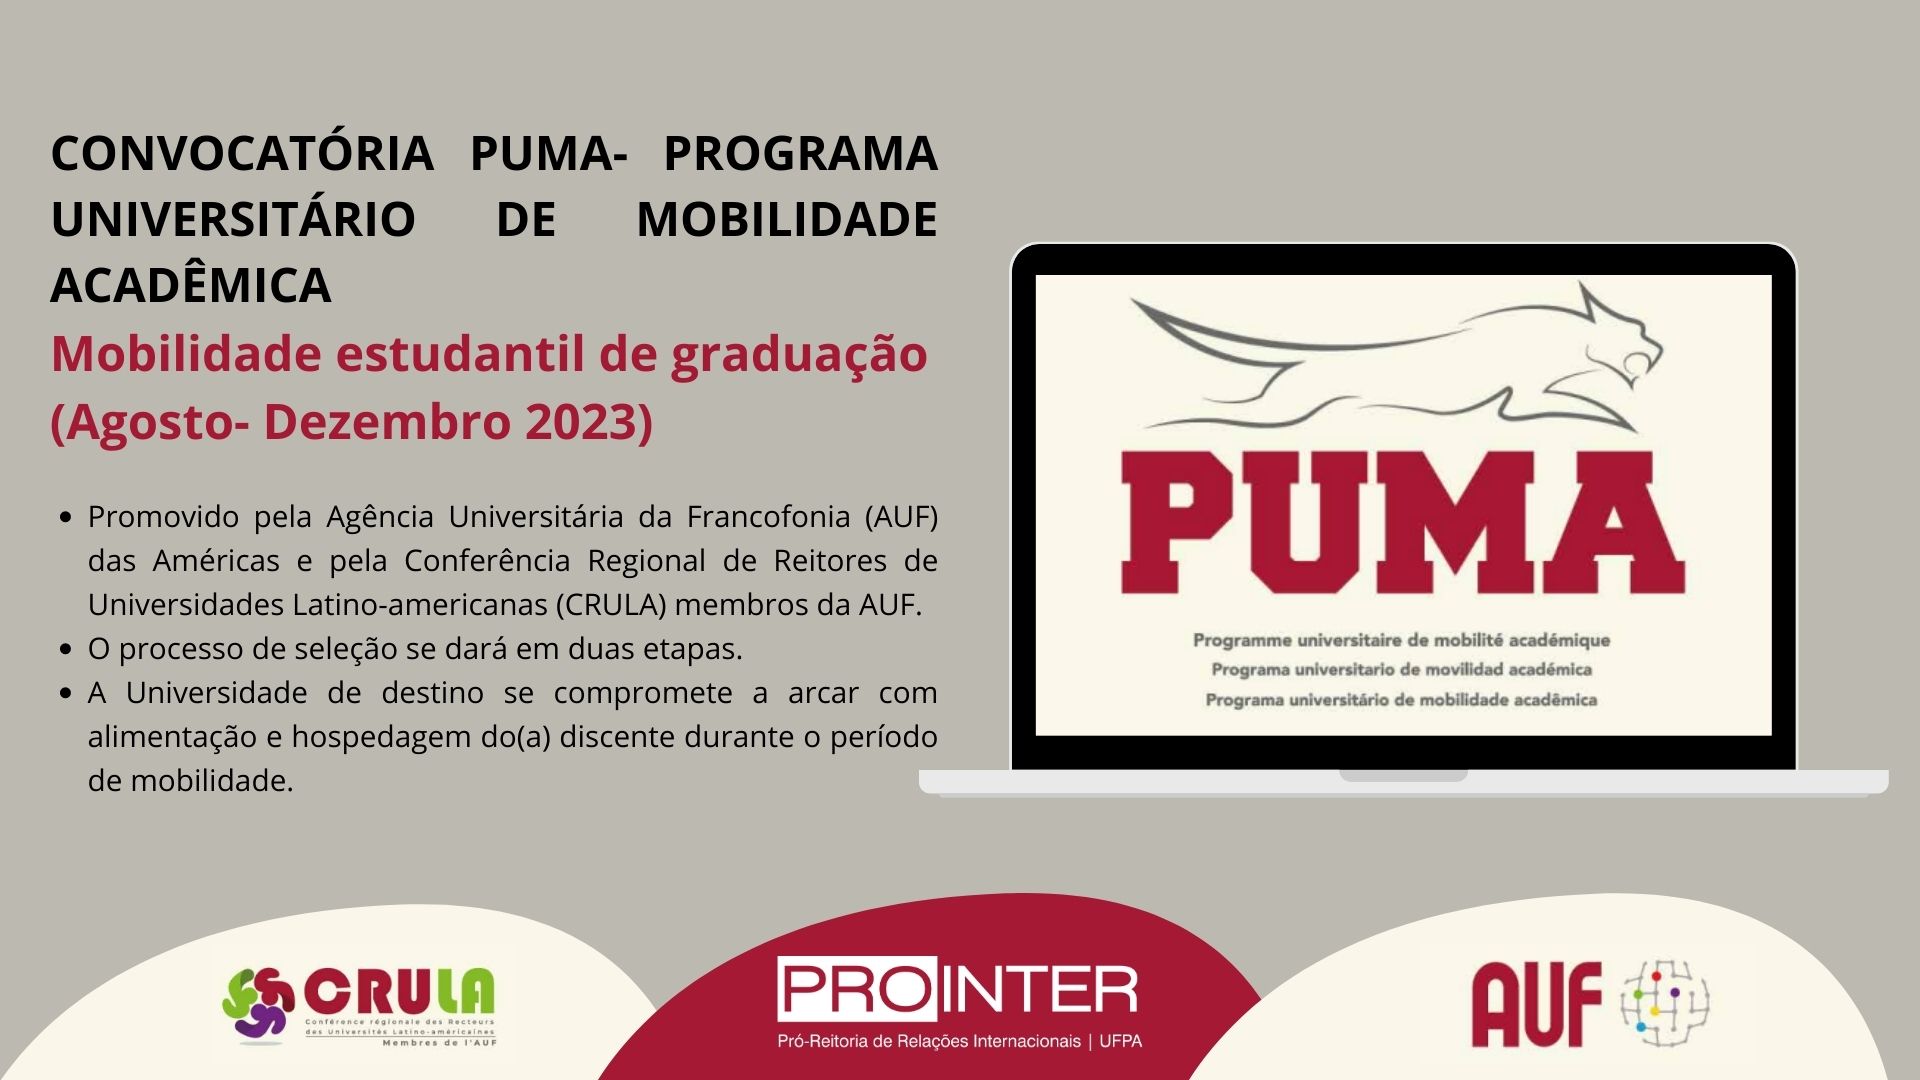 PROINTER lança edital para Programa Universitário de Mobilidade Acadêmica – PUMA no âmbito da Agência Universitária de Francofonia (AUF)